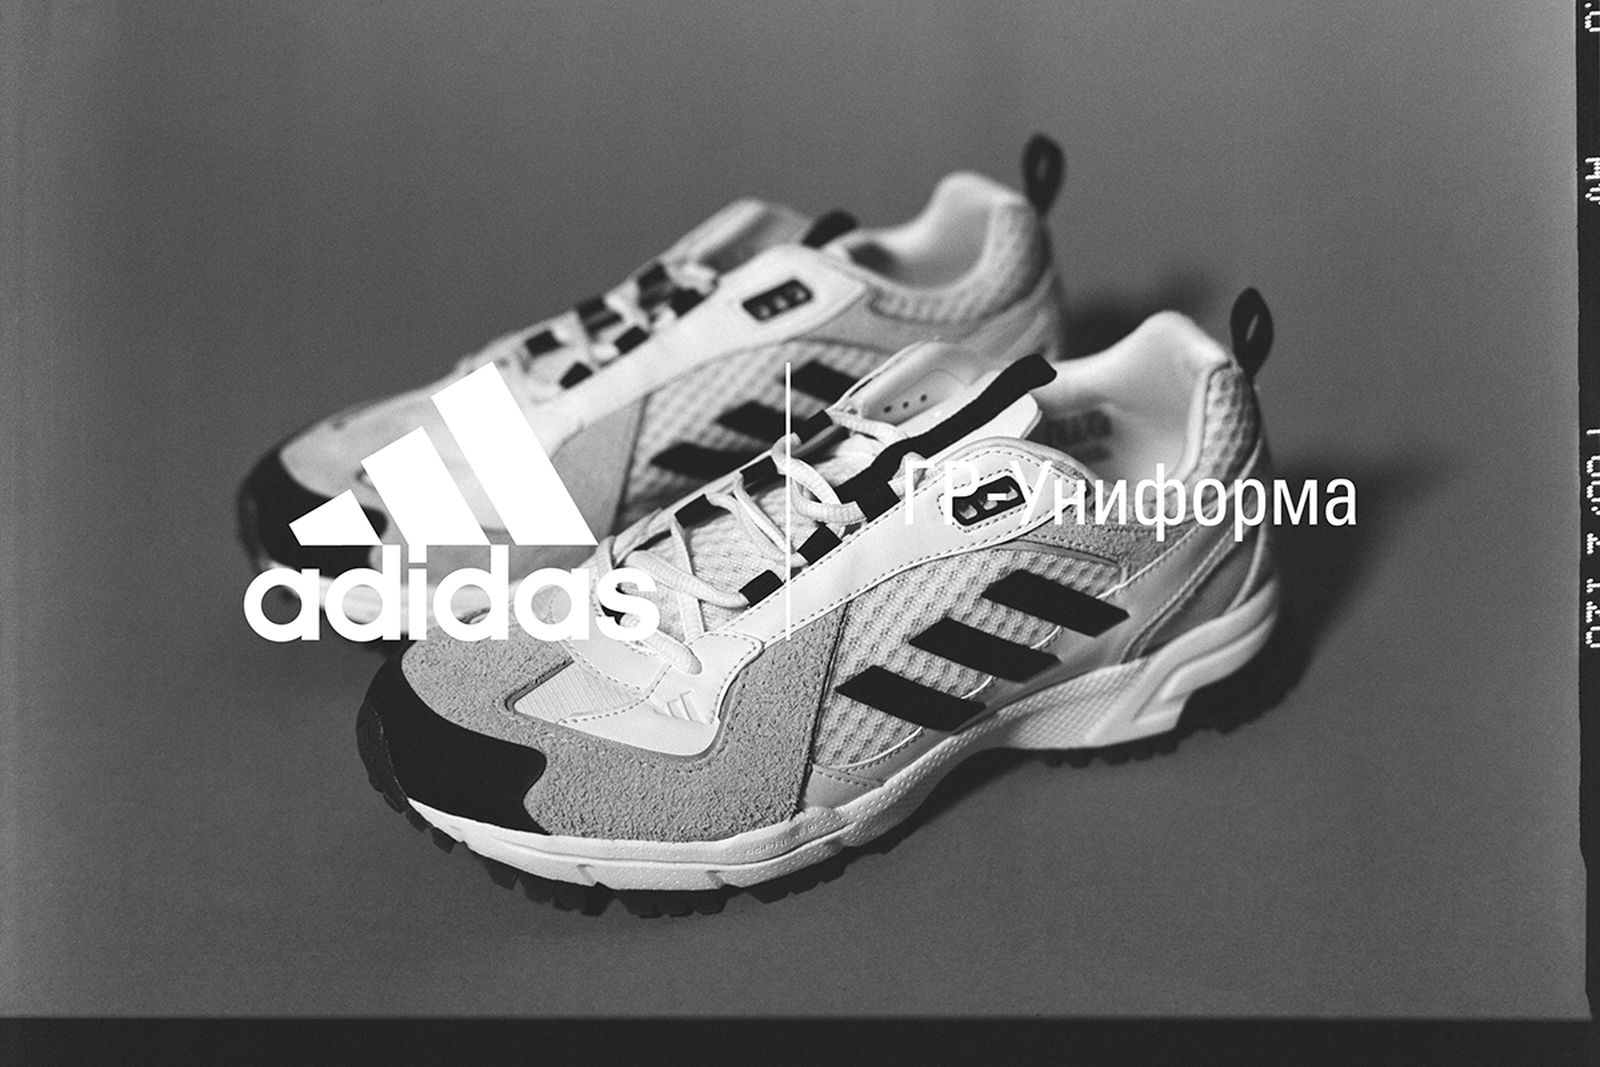 GR-Uniforma by Gosha Rubchinskiy x adidas: First Look & Info